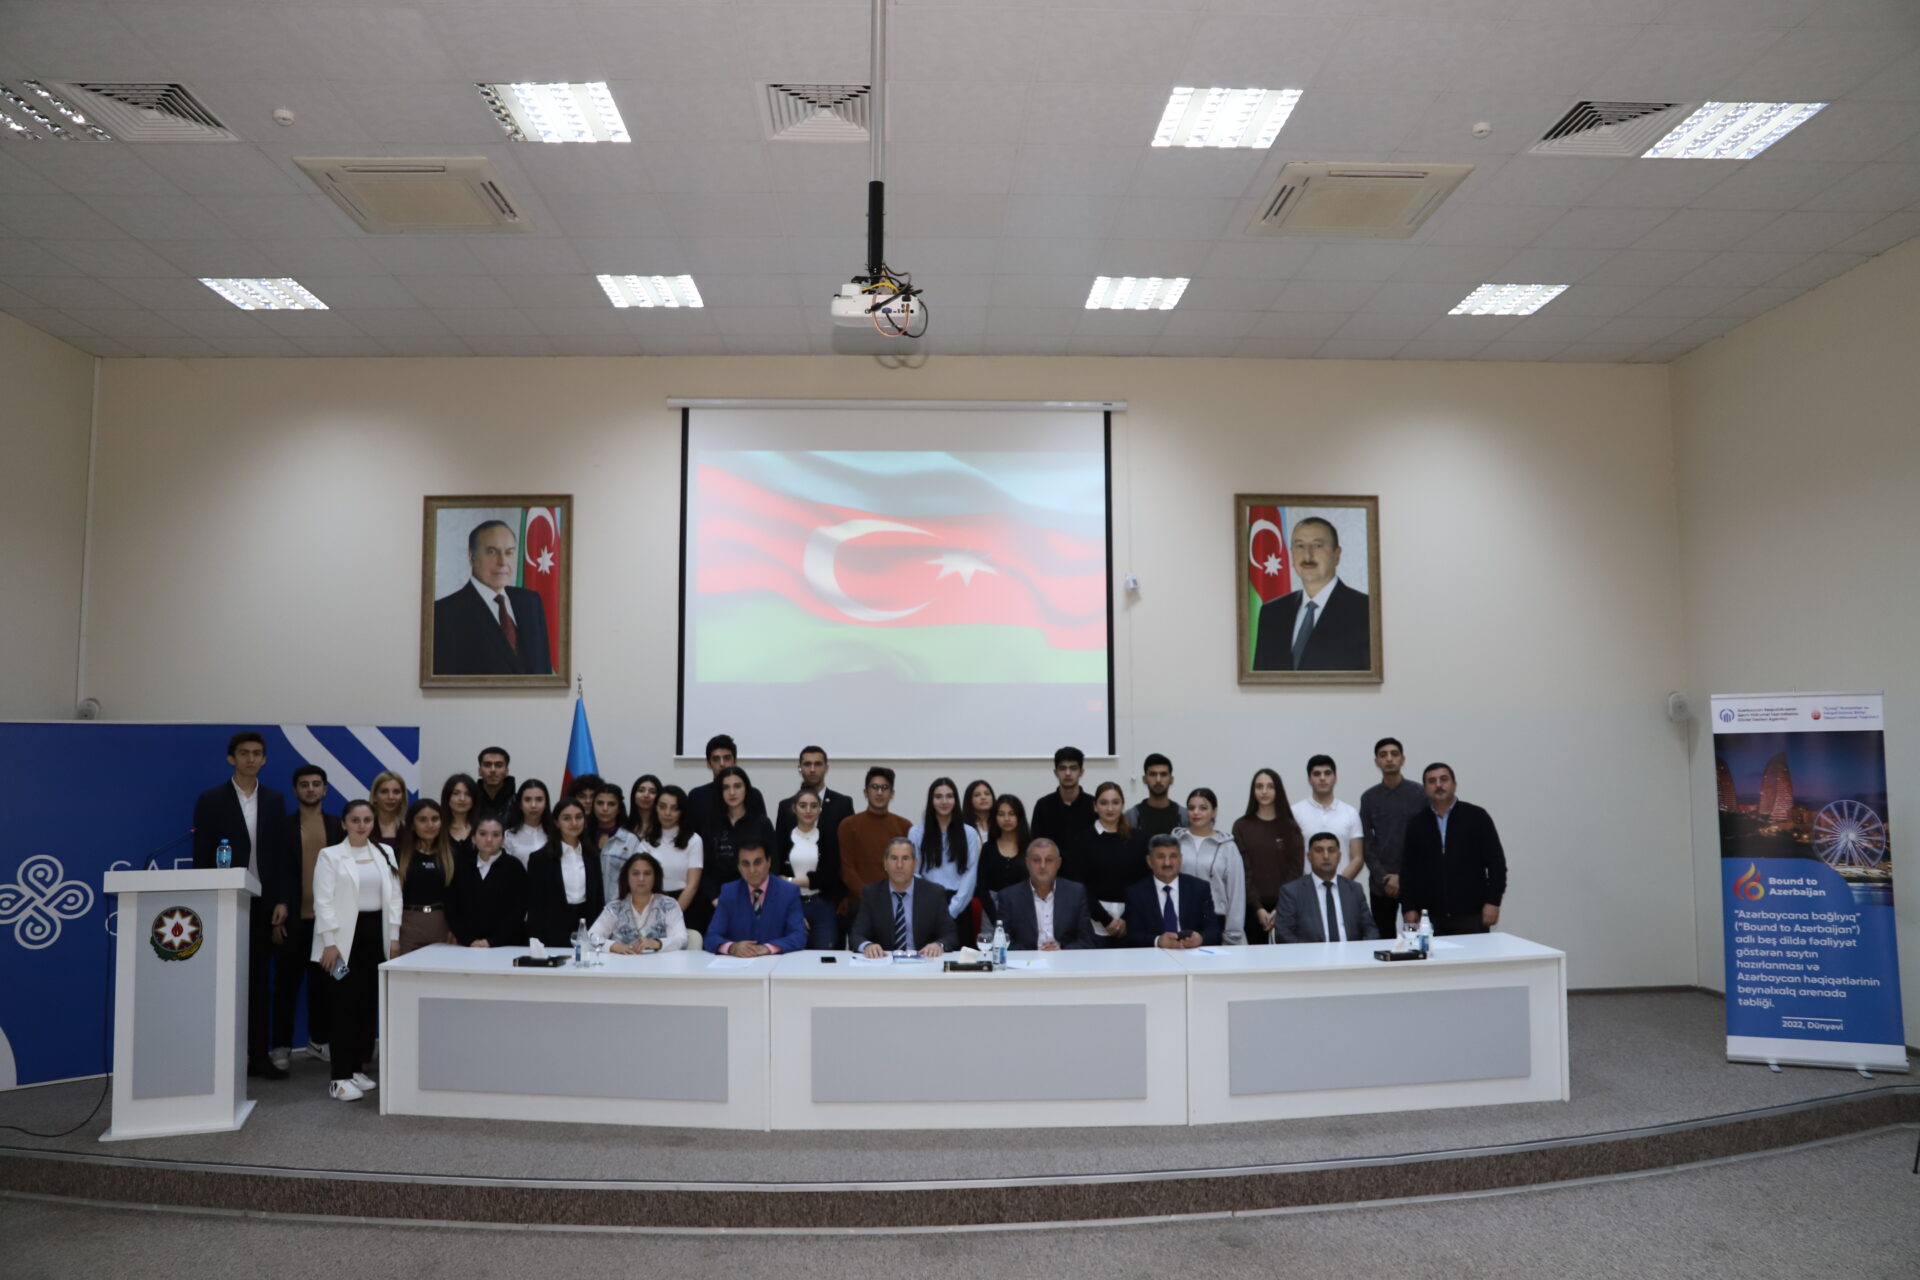 Präsentation des Projekts „Bound to Azerbaijan“ in fünf Sprachen und Förderung aserbaidschanischer Wahrheiten auf internationaler Ebene